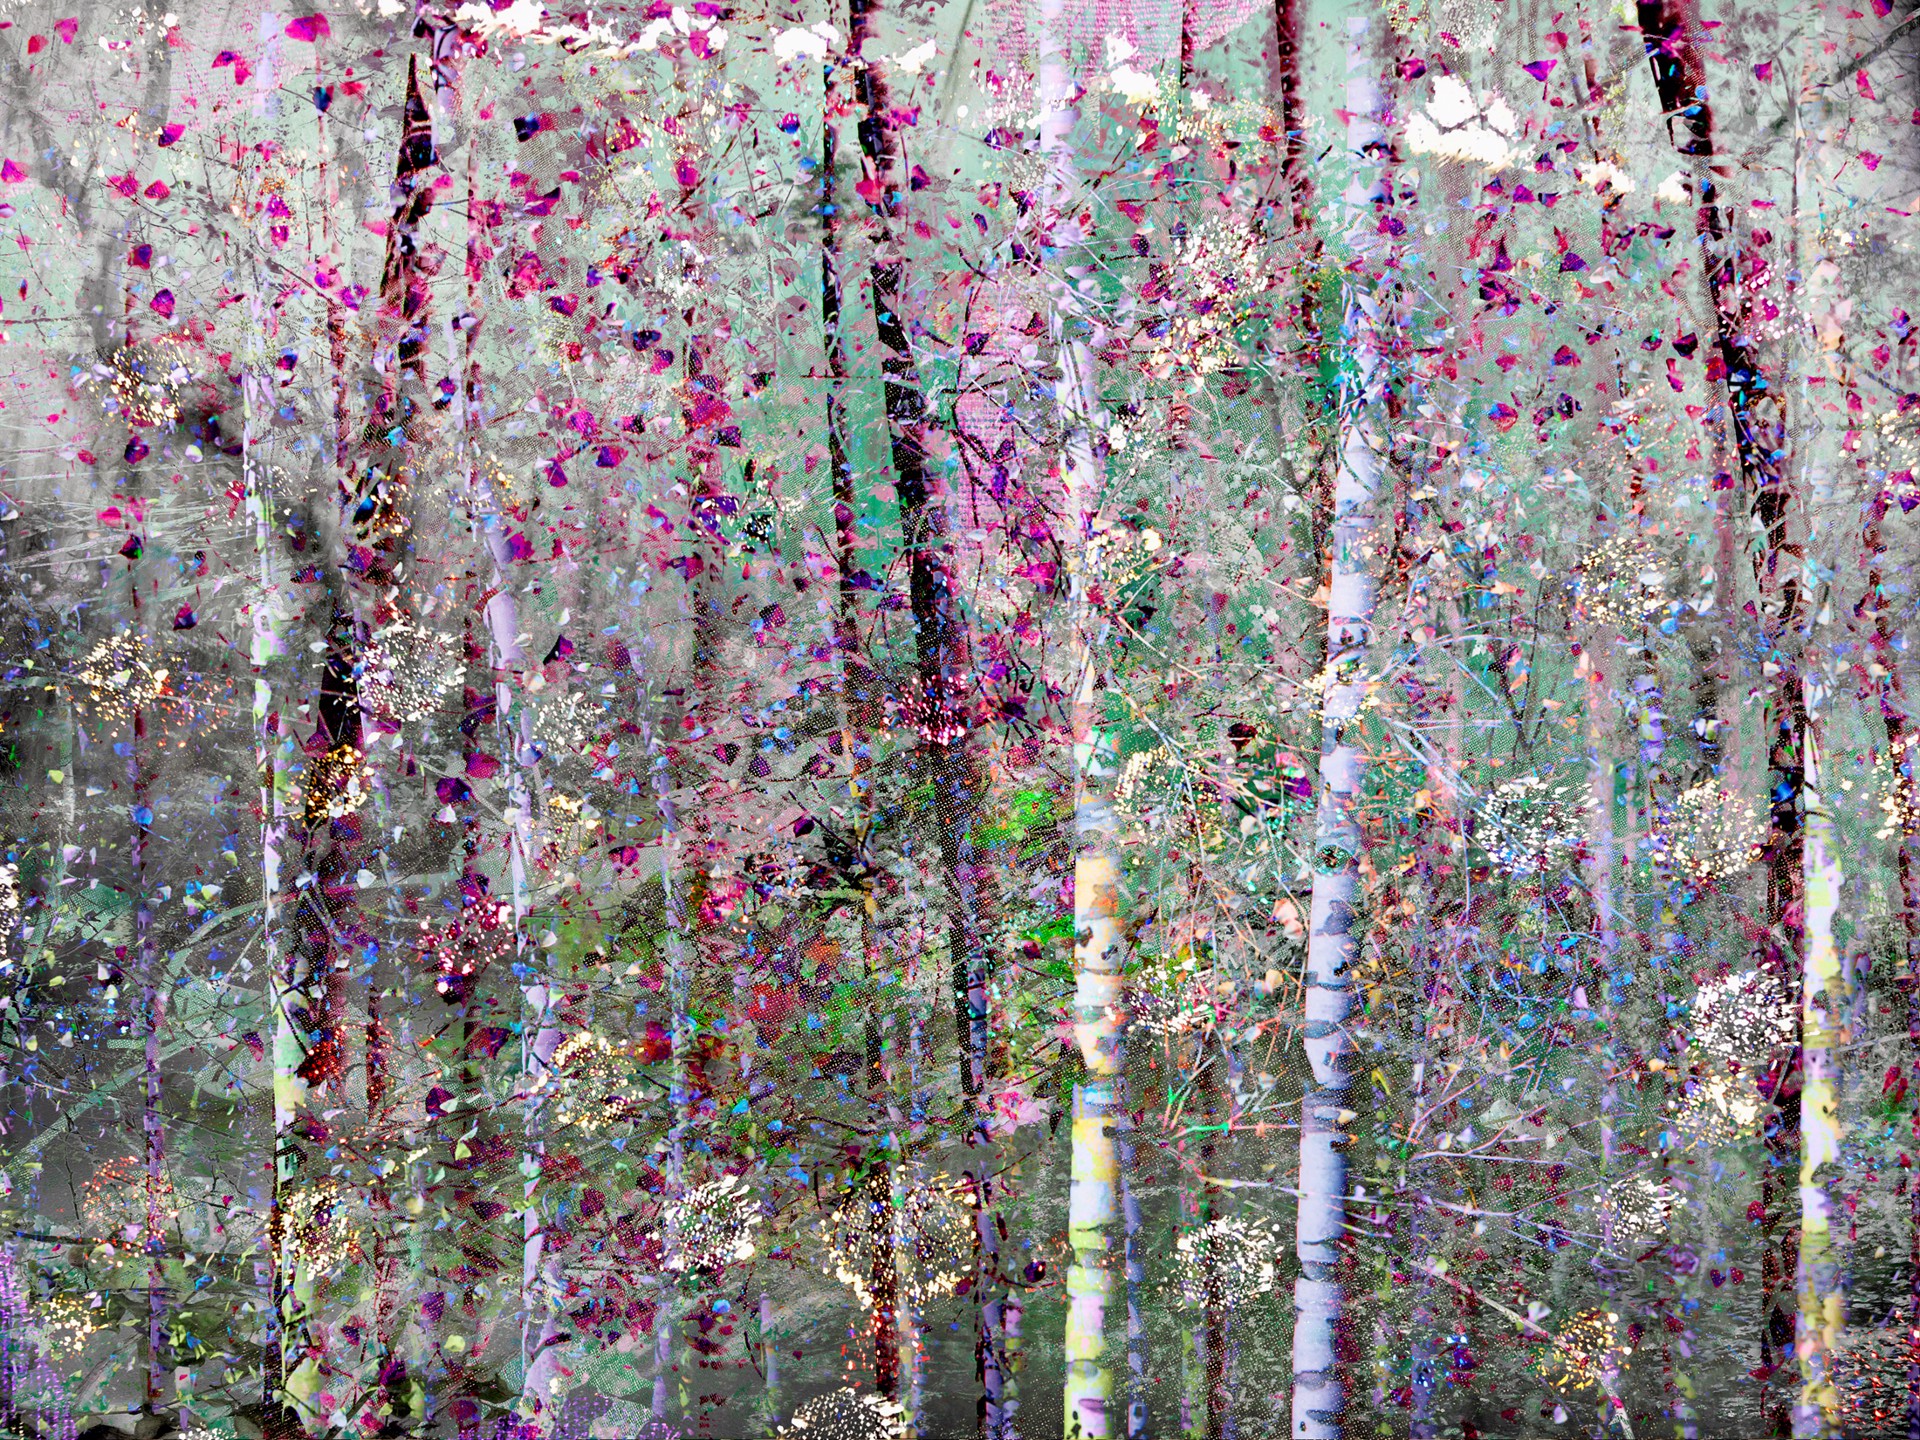 MAGIC FOREST by CAROL EISENBERG